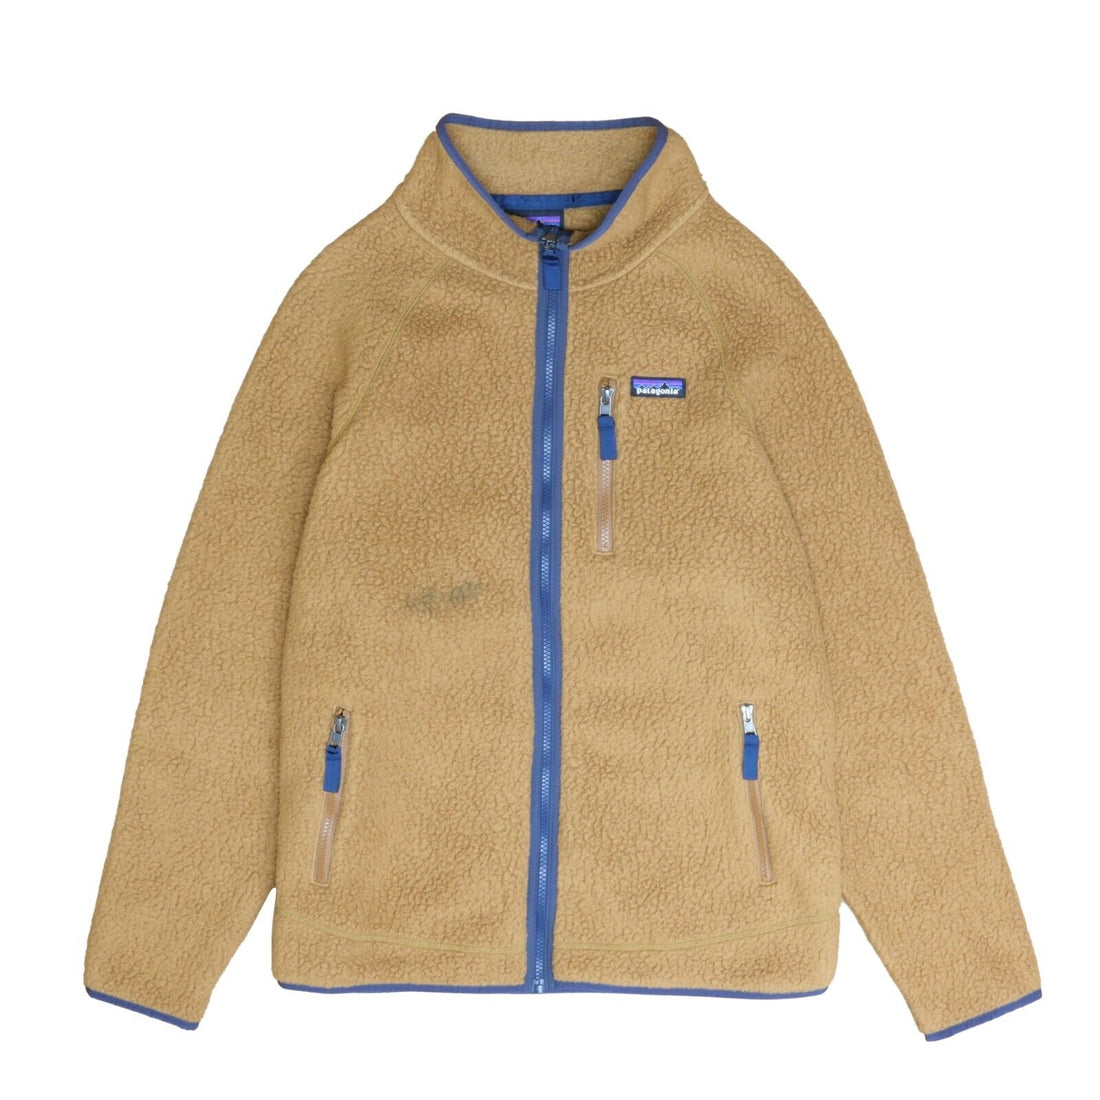 Patagonia Fleece Jacket Size Large Brown Full Zip